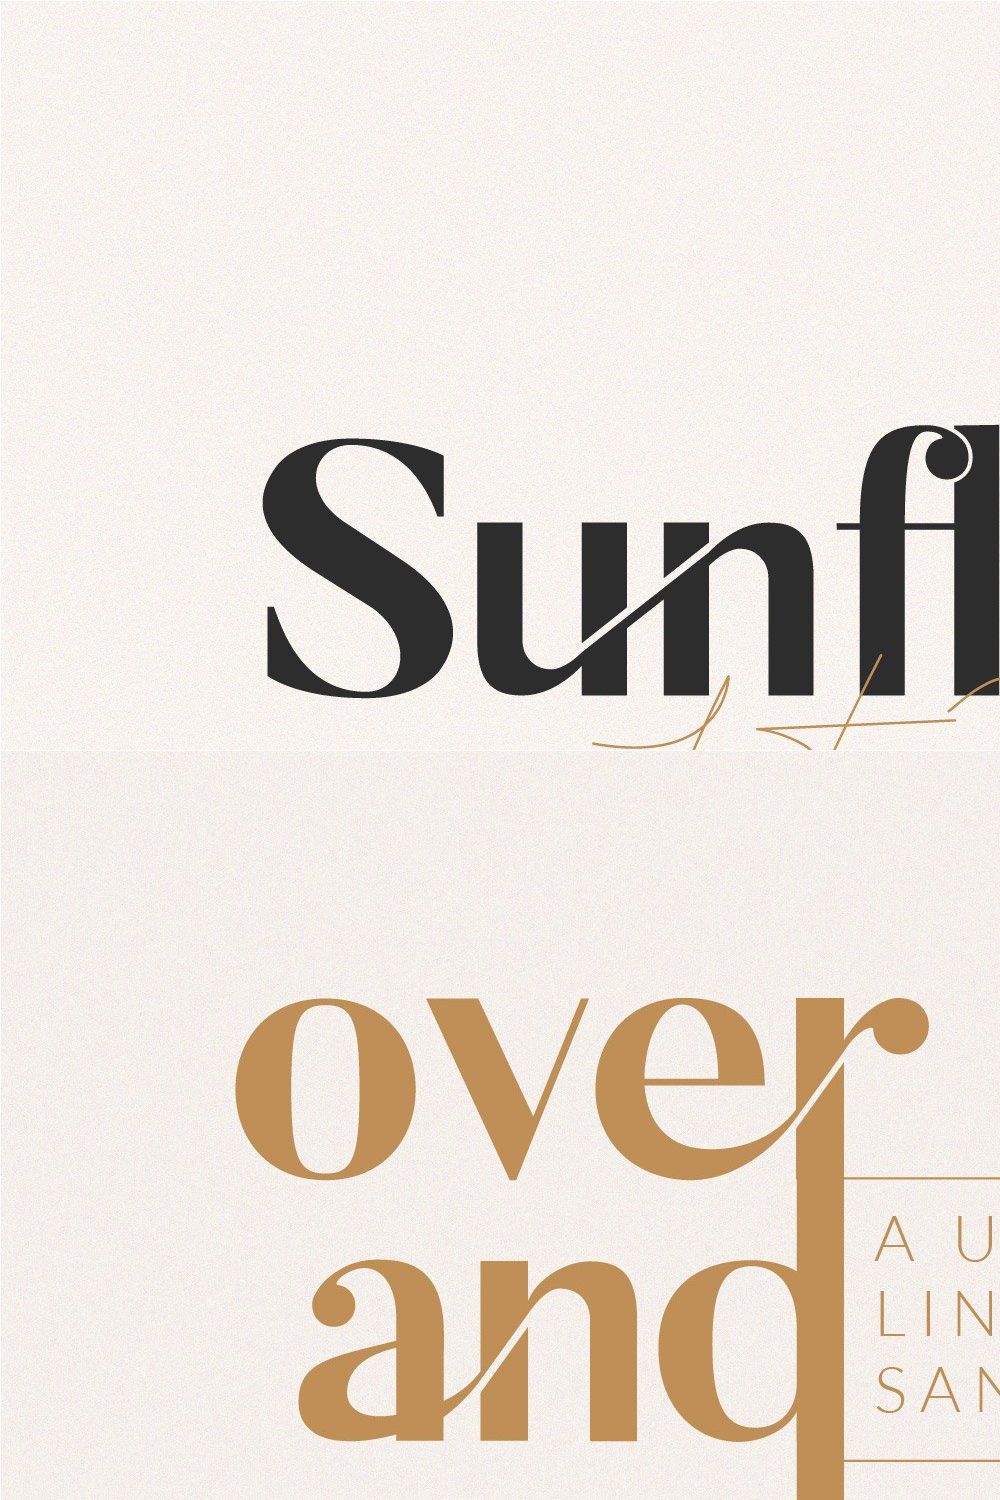 Sunflora - Unique Ligature Font pinterest preview image.